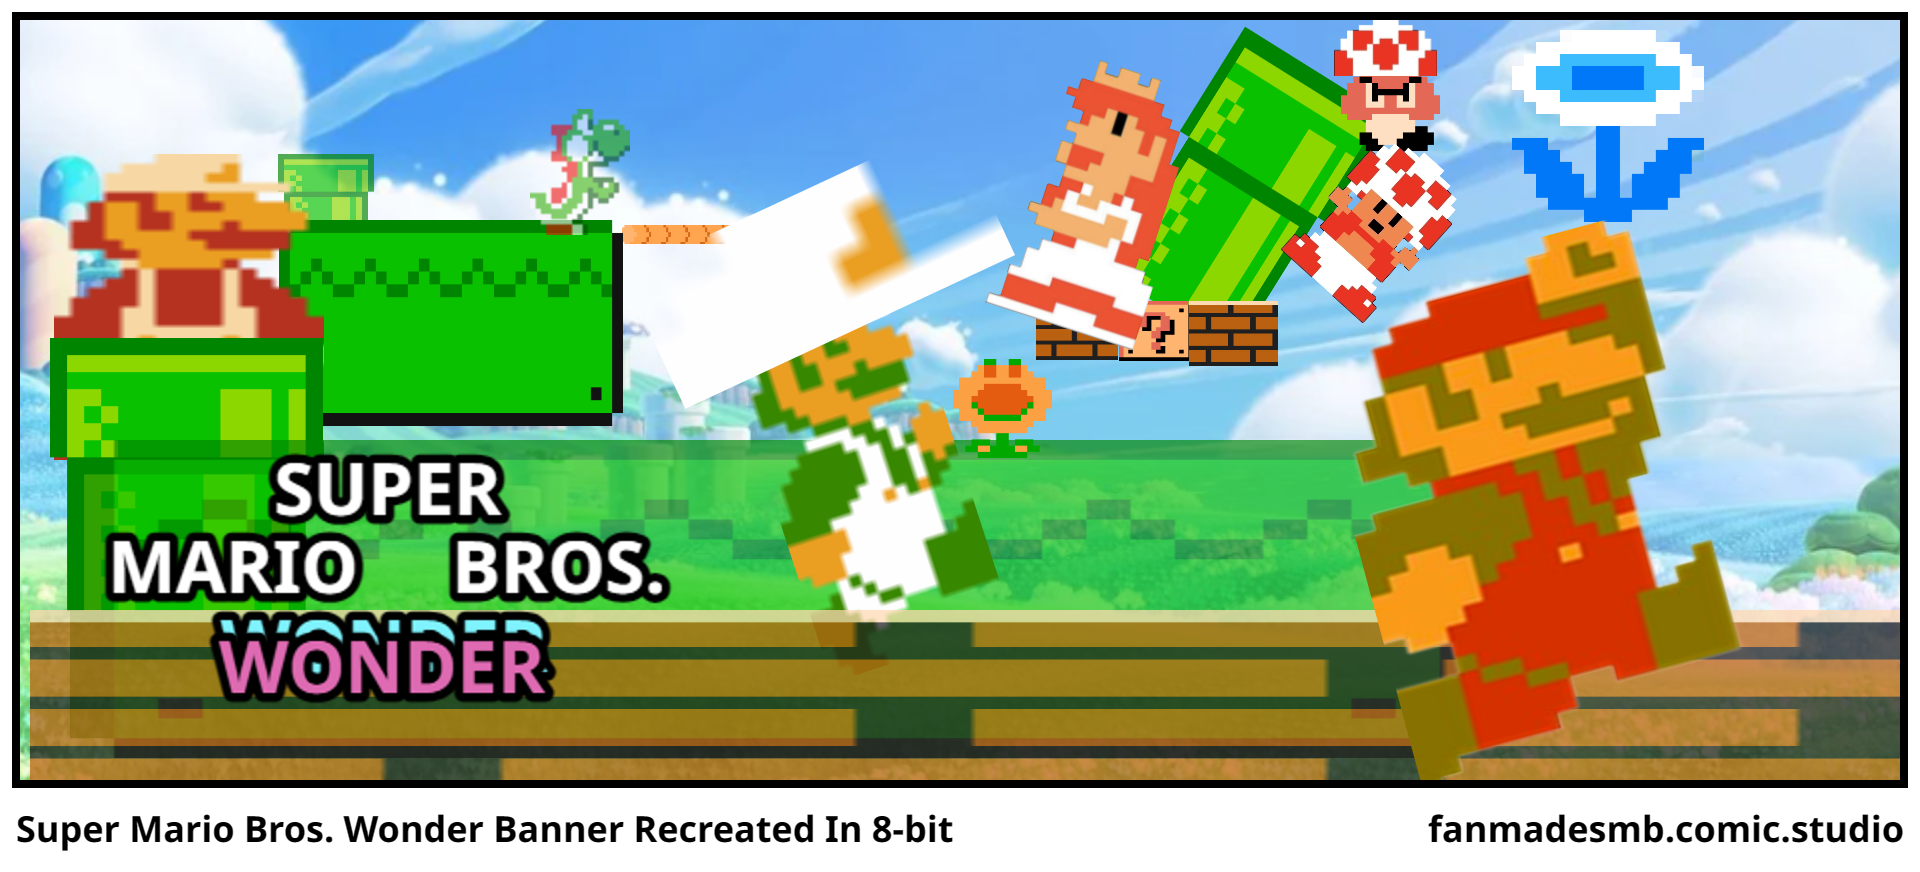 Super Mario Bros. Wonder Banner Recreated In 8-bit